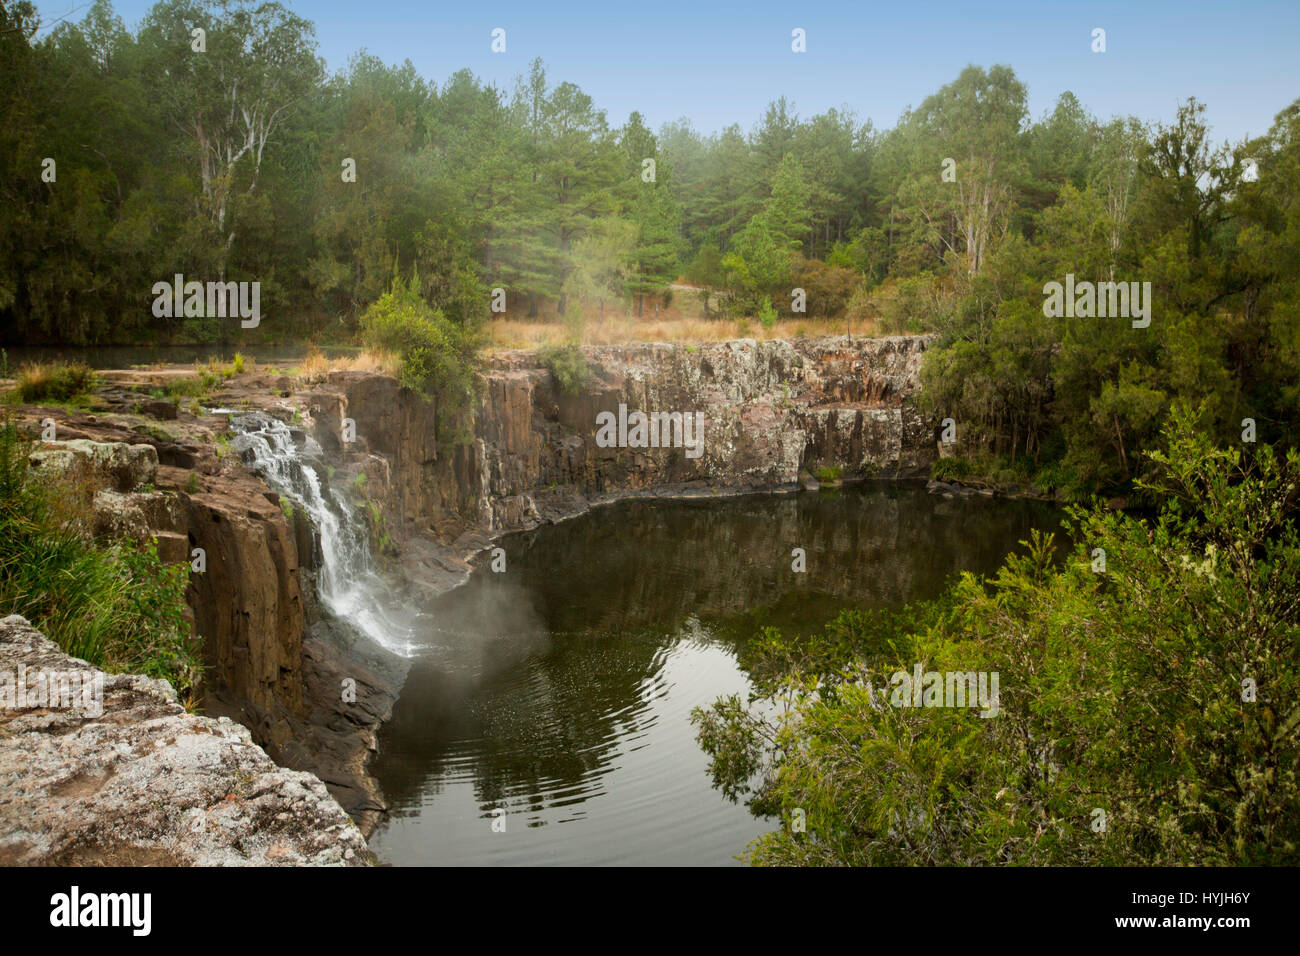 Cascata cascata più alta scogliera rocciosa nelle calme acque della piscina profonda a Tooloom rientra tra i boschi del nord NSW Australia Foto Stock